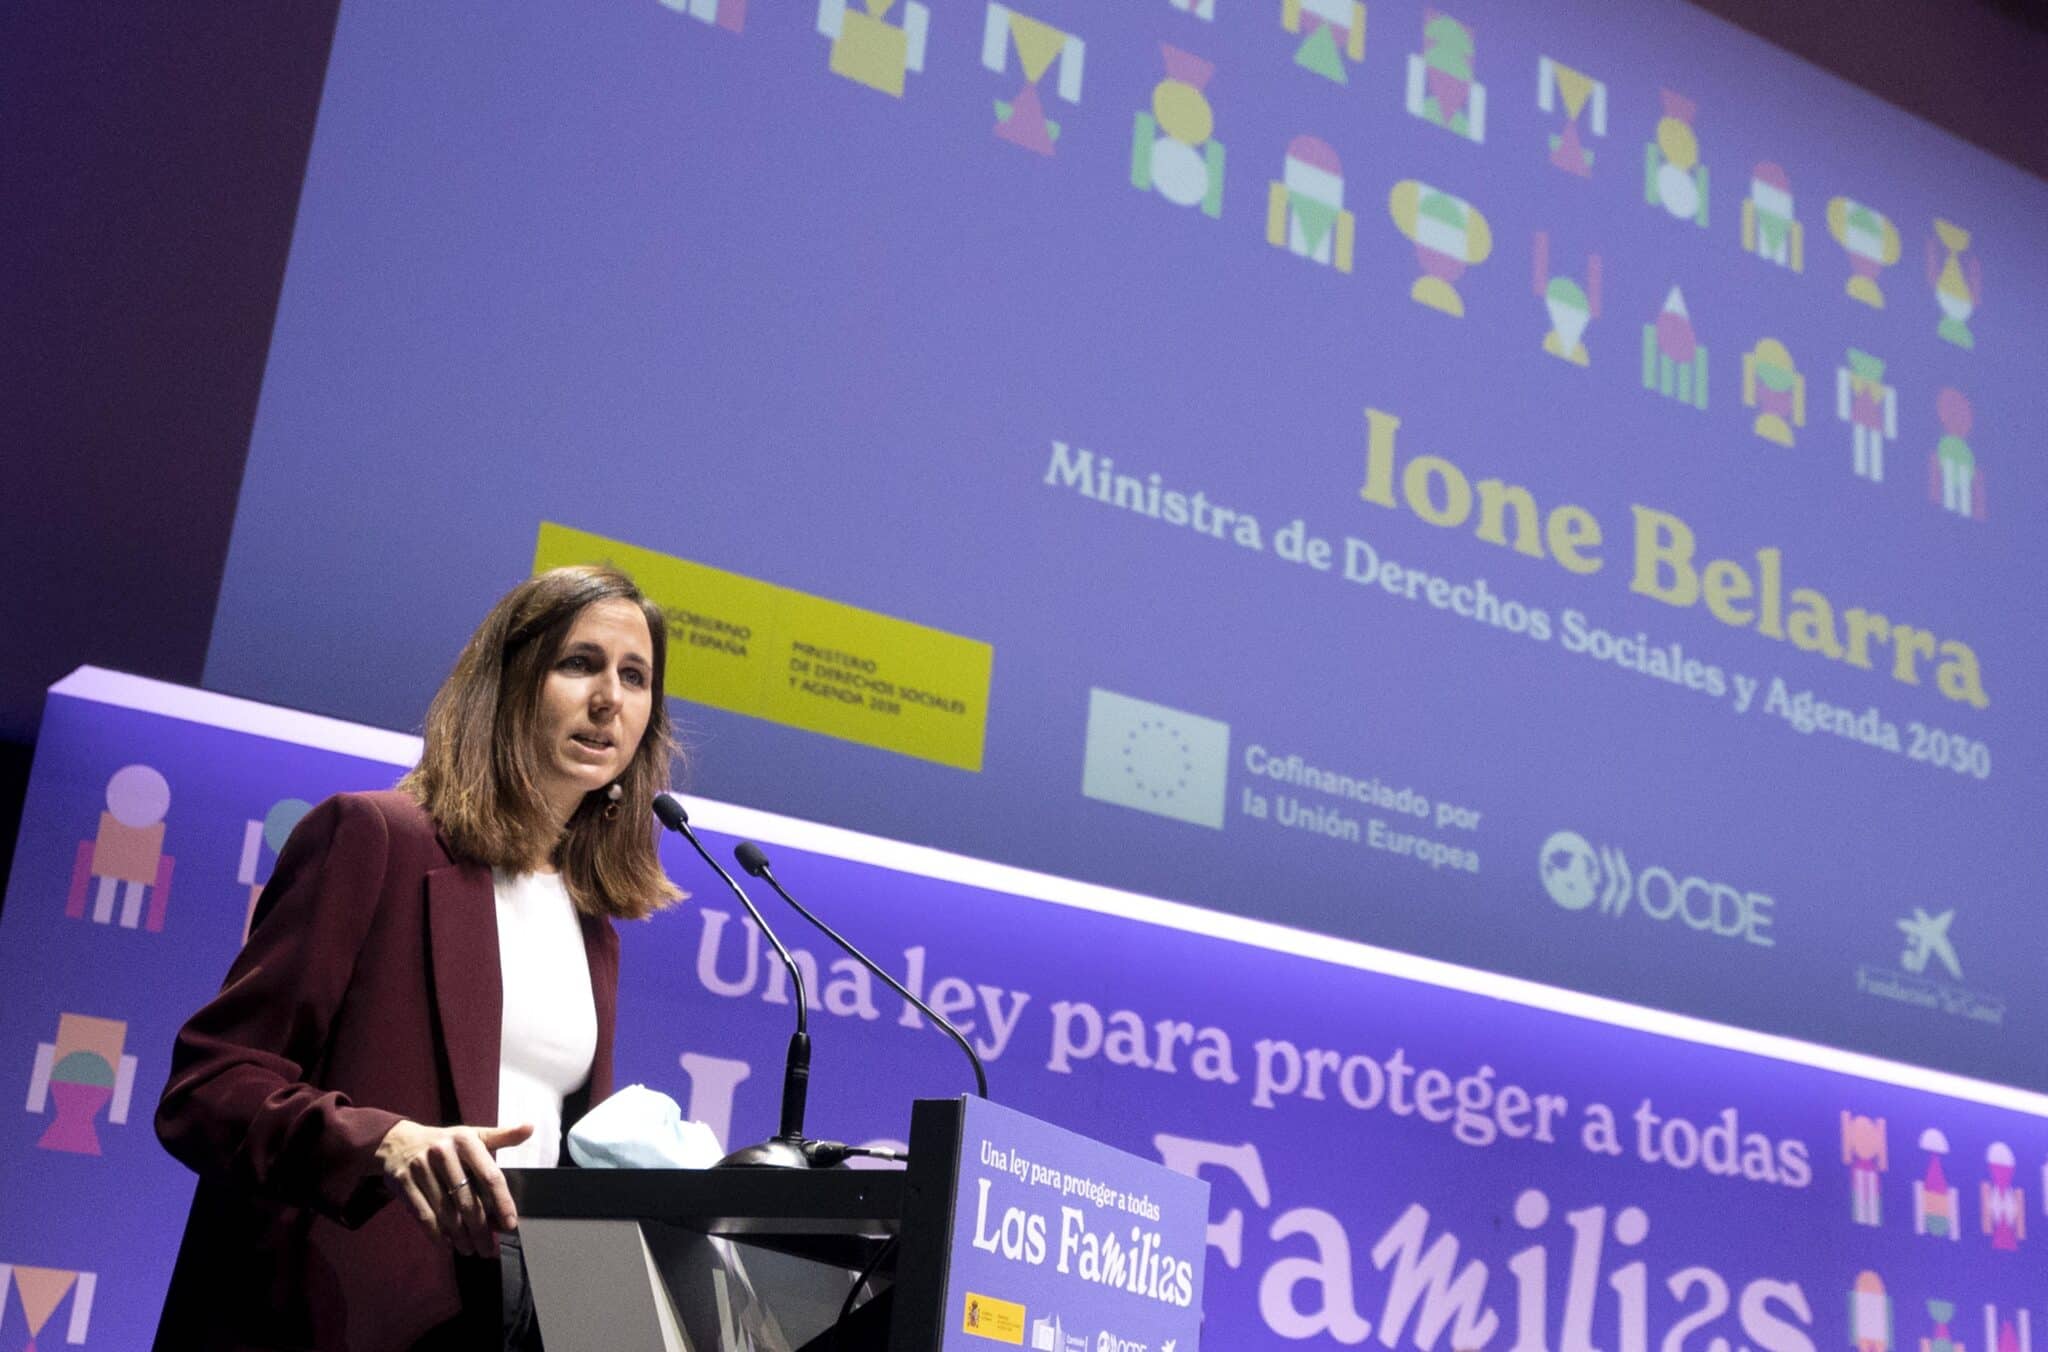 La ministra de Derechos Sociales y Agenda 2030, Ione Belarra, interviene en la presentación de un Libro Blanco para un nuevo marco nacional sobre apoyo y protección familiar.